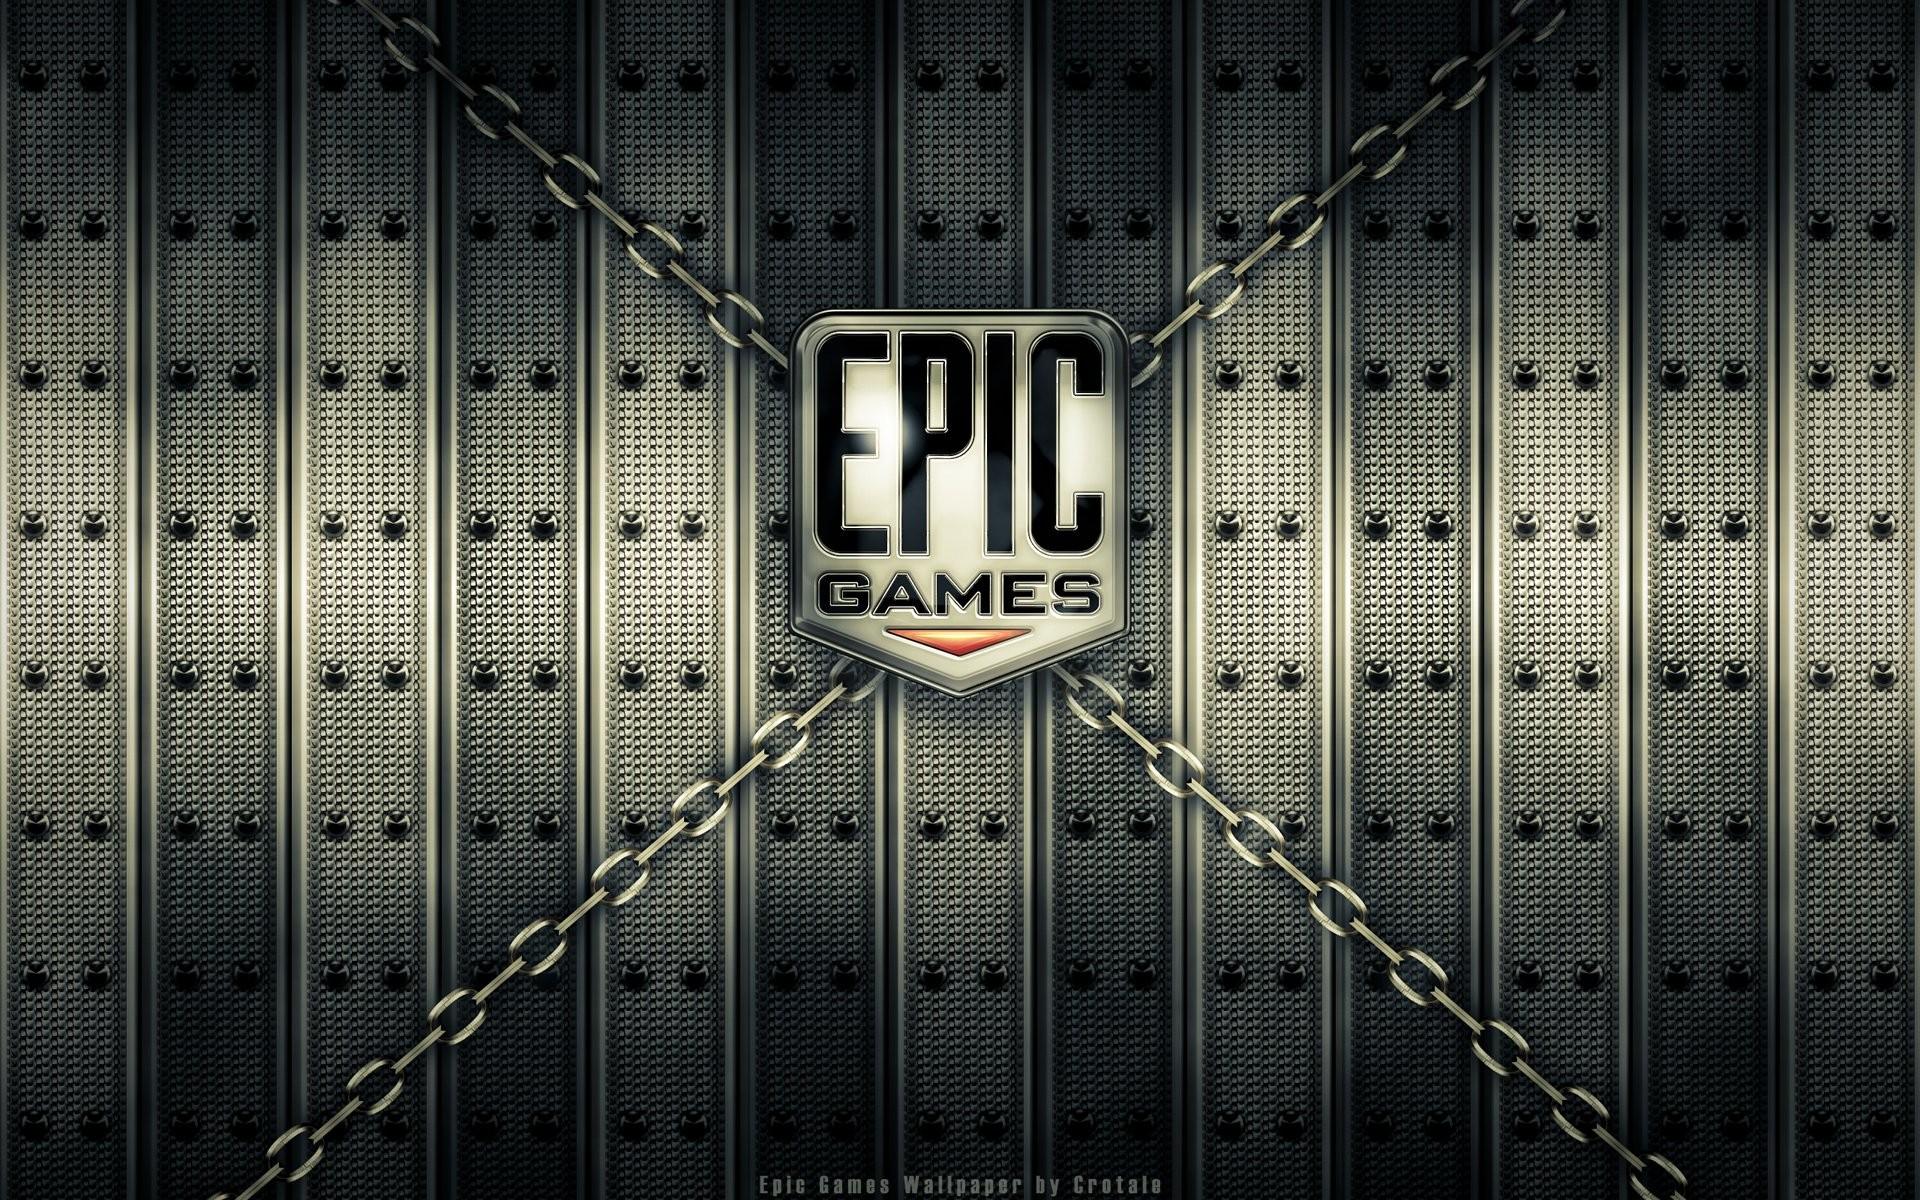 Epic Games 274 TL Değerindeki Oyunları Ücretsiz Yaptı!